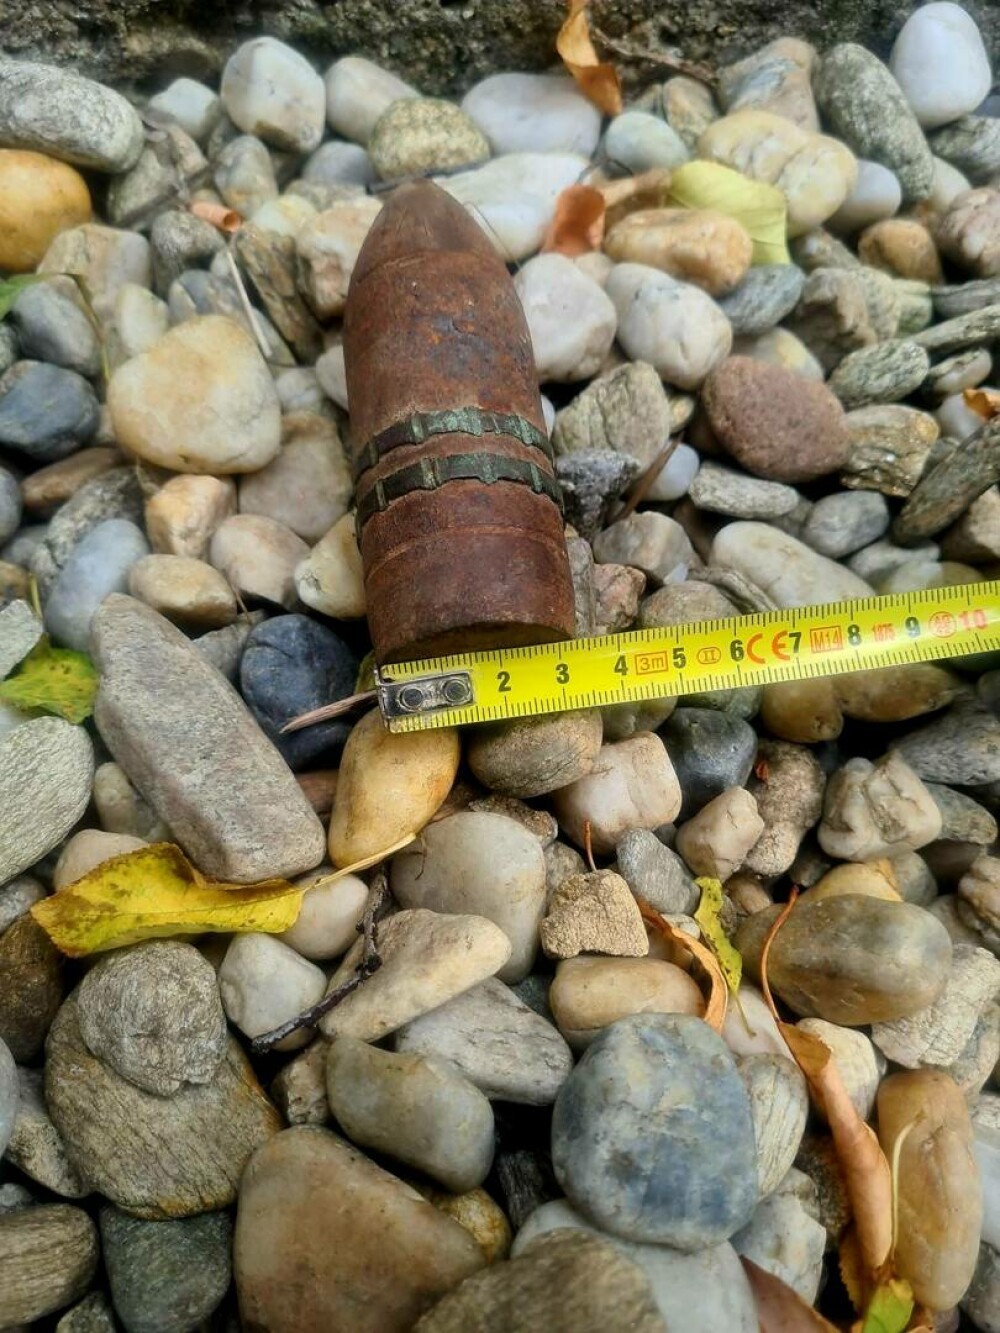 Proiectil exploziv găsit în podul unei case, în Giurgiu, de un bărbat care decoperta acoperişul. Ce au constatat specialiștii - Imaginea 2